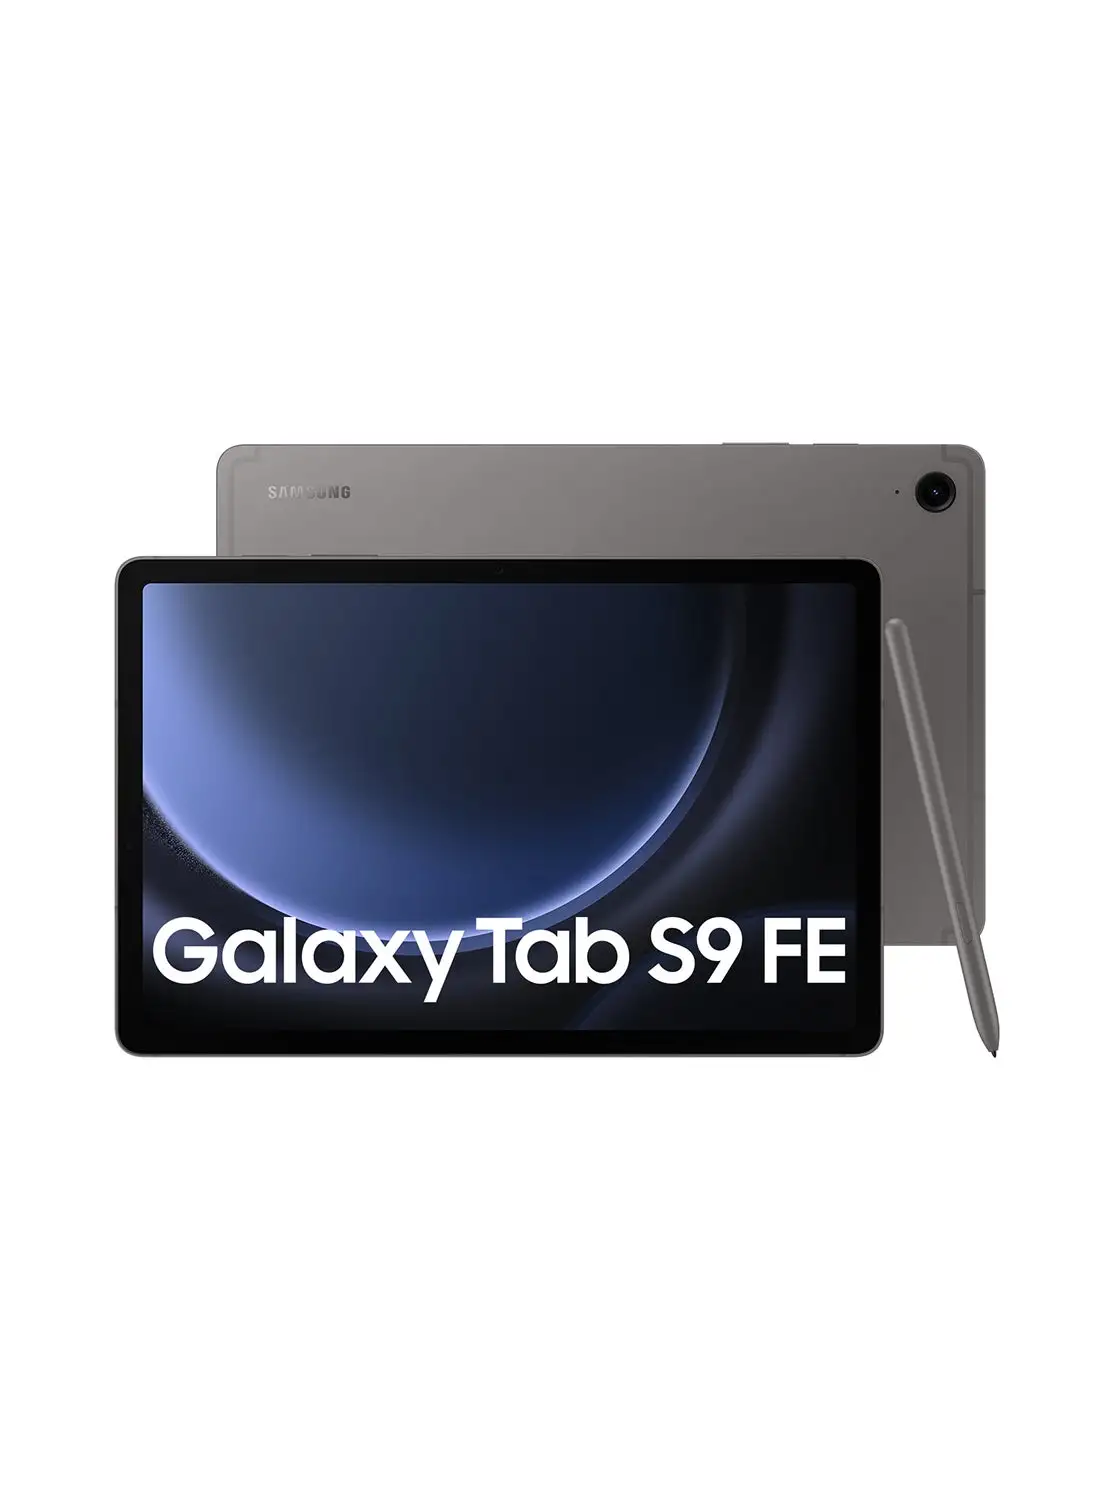 Samsung Galaxy Tab S9 FE Gray 6GB RAM 128GB Wifi - Middle East Version